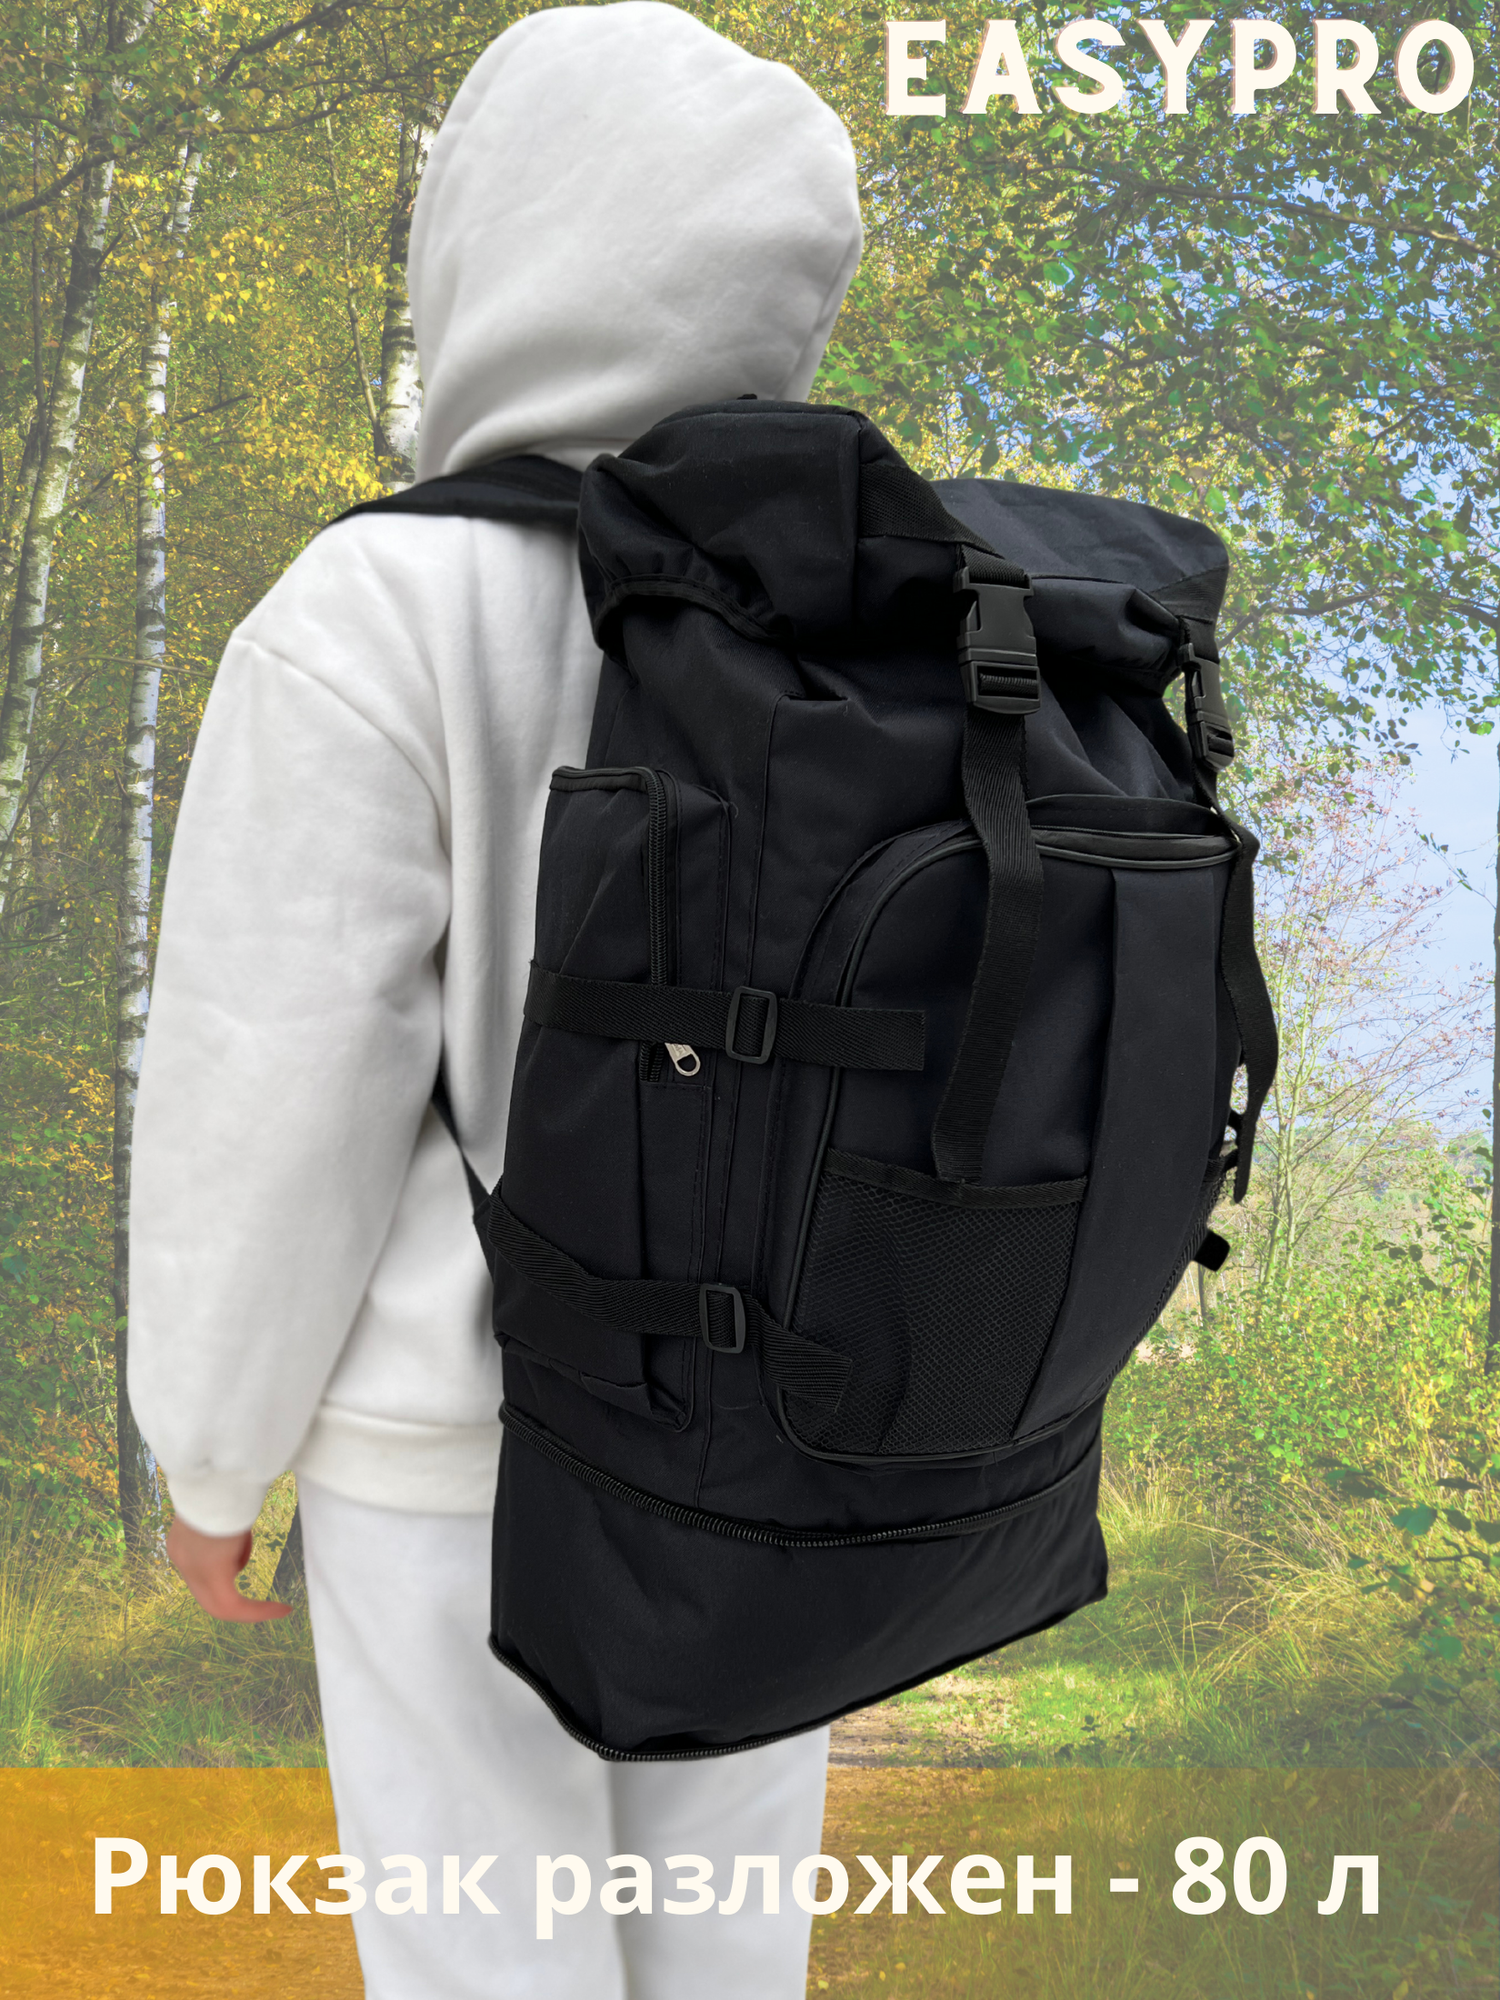 Рюкзак туристический 80 л, черный, рюкзак мужской женский Походный, спортивный, баул, для охоты, рыбалки, туризма